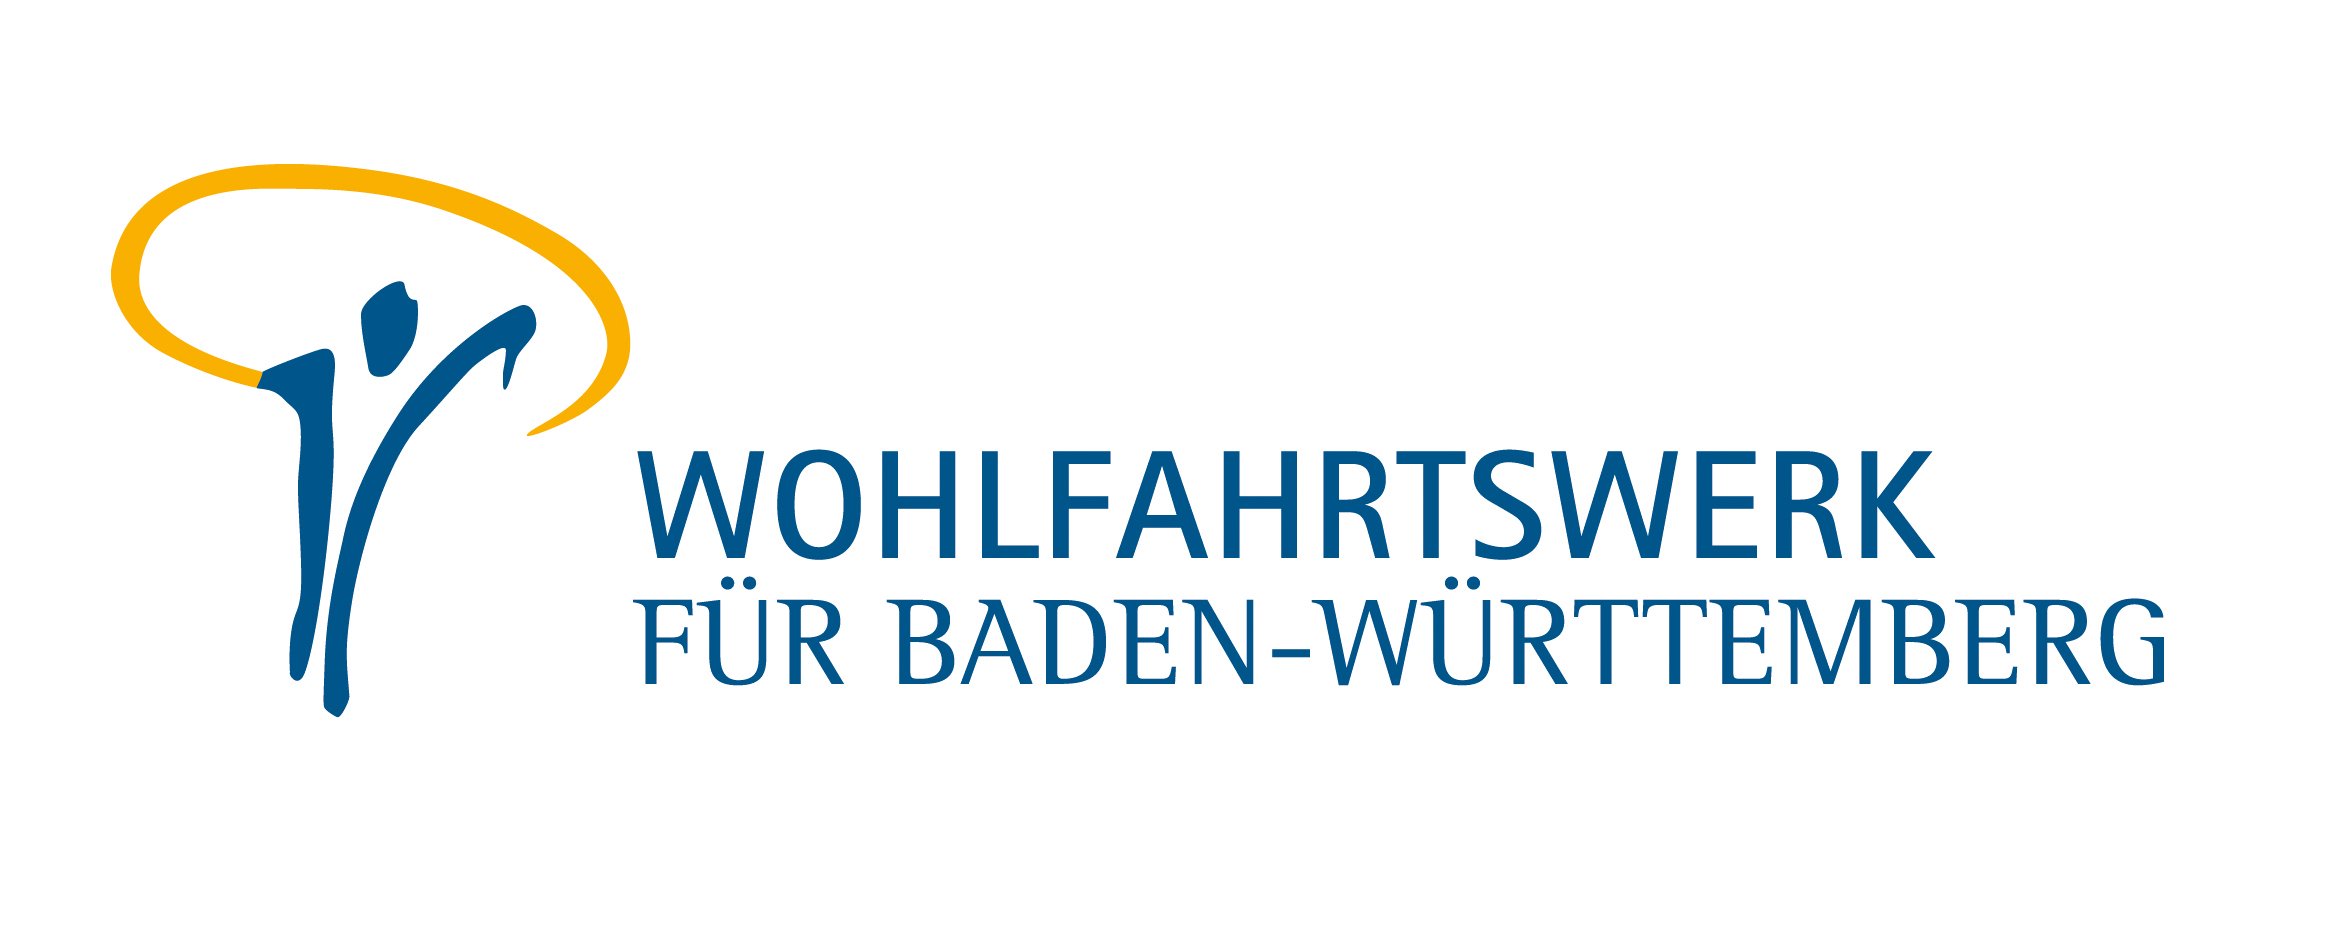 WW_Logo_Stiftung_2021.jpg